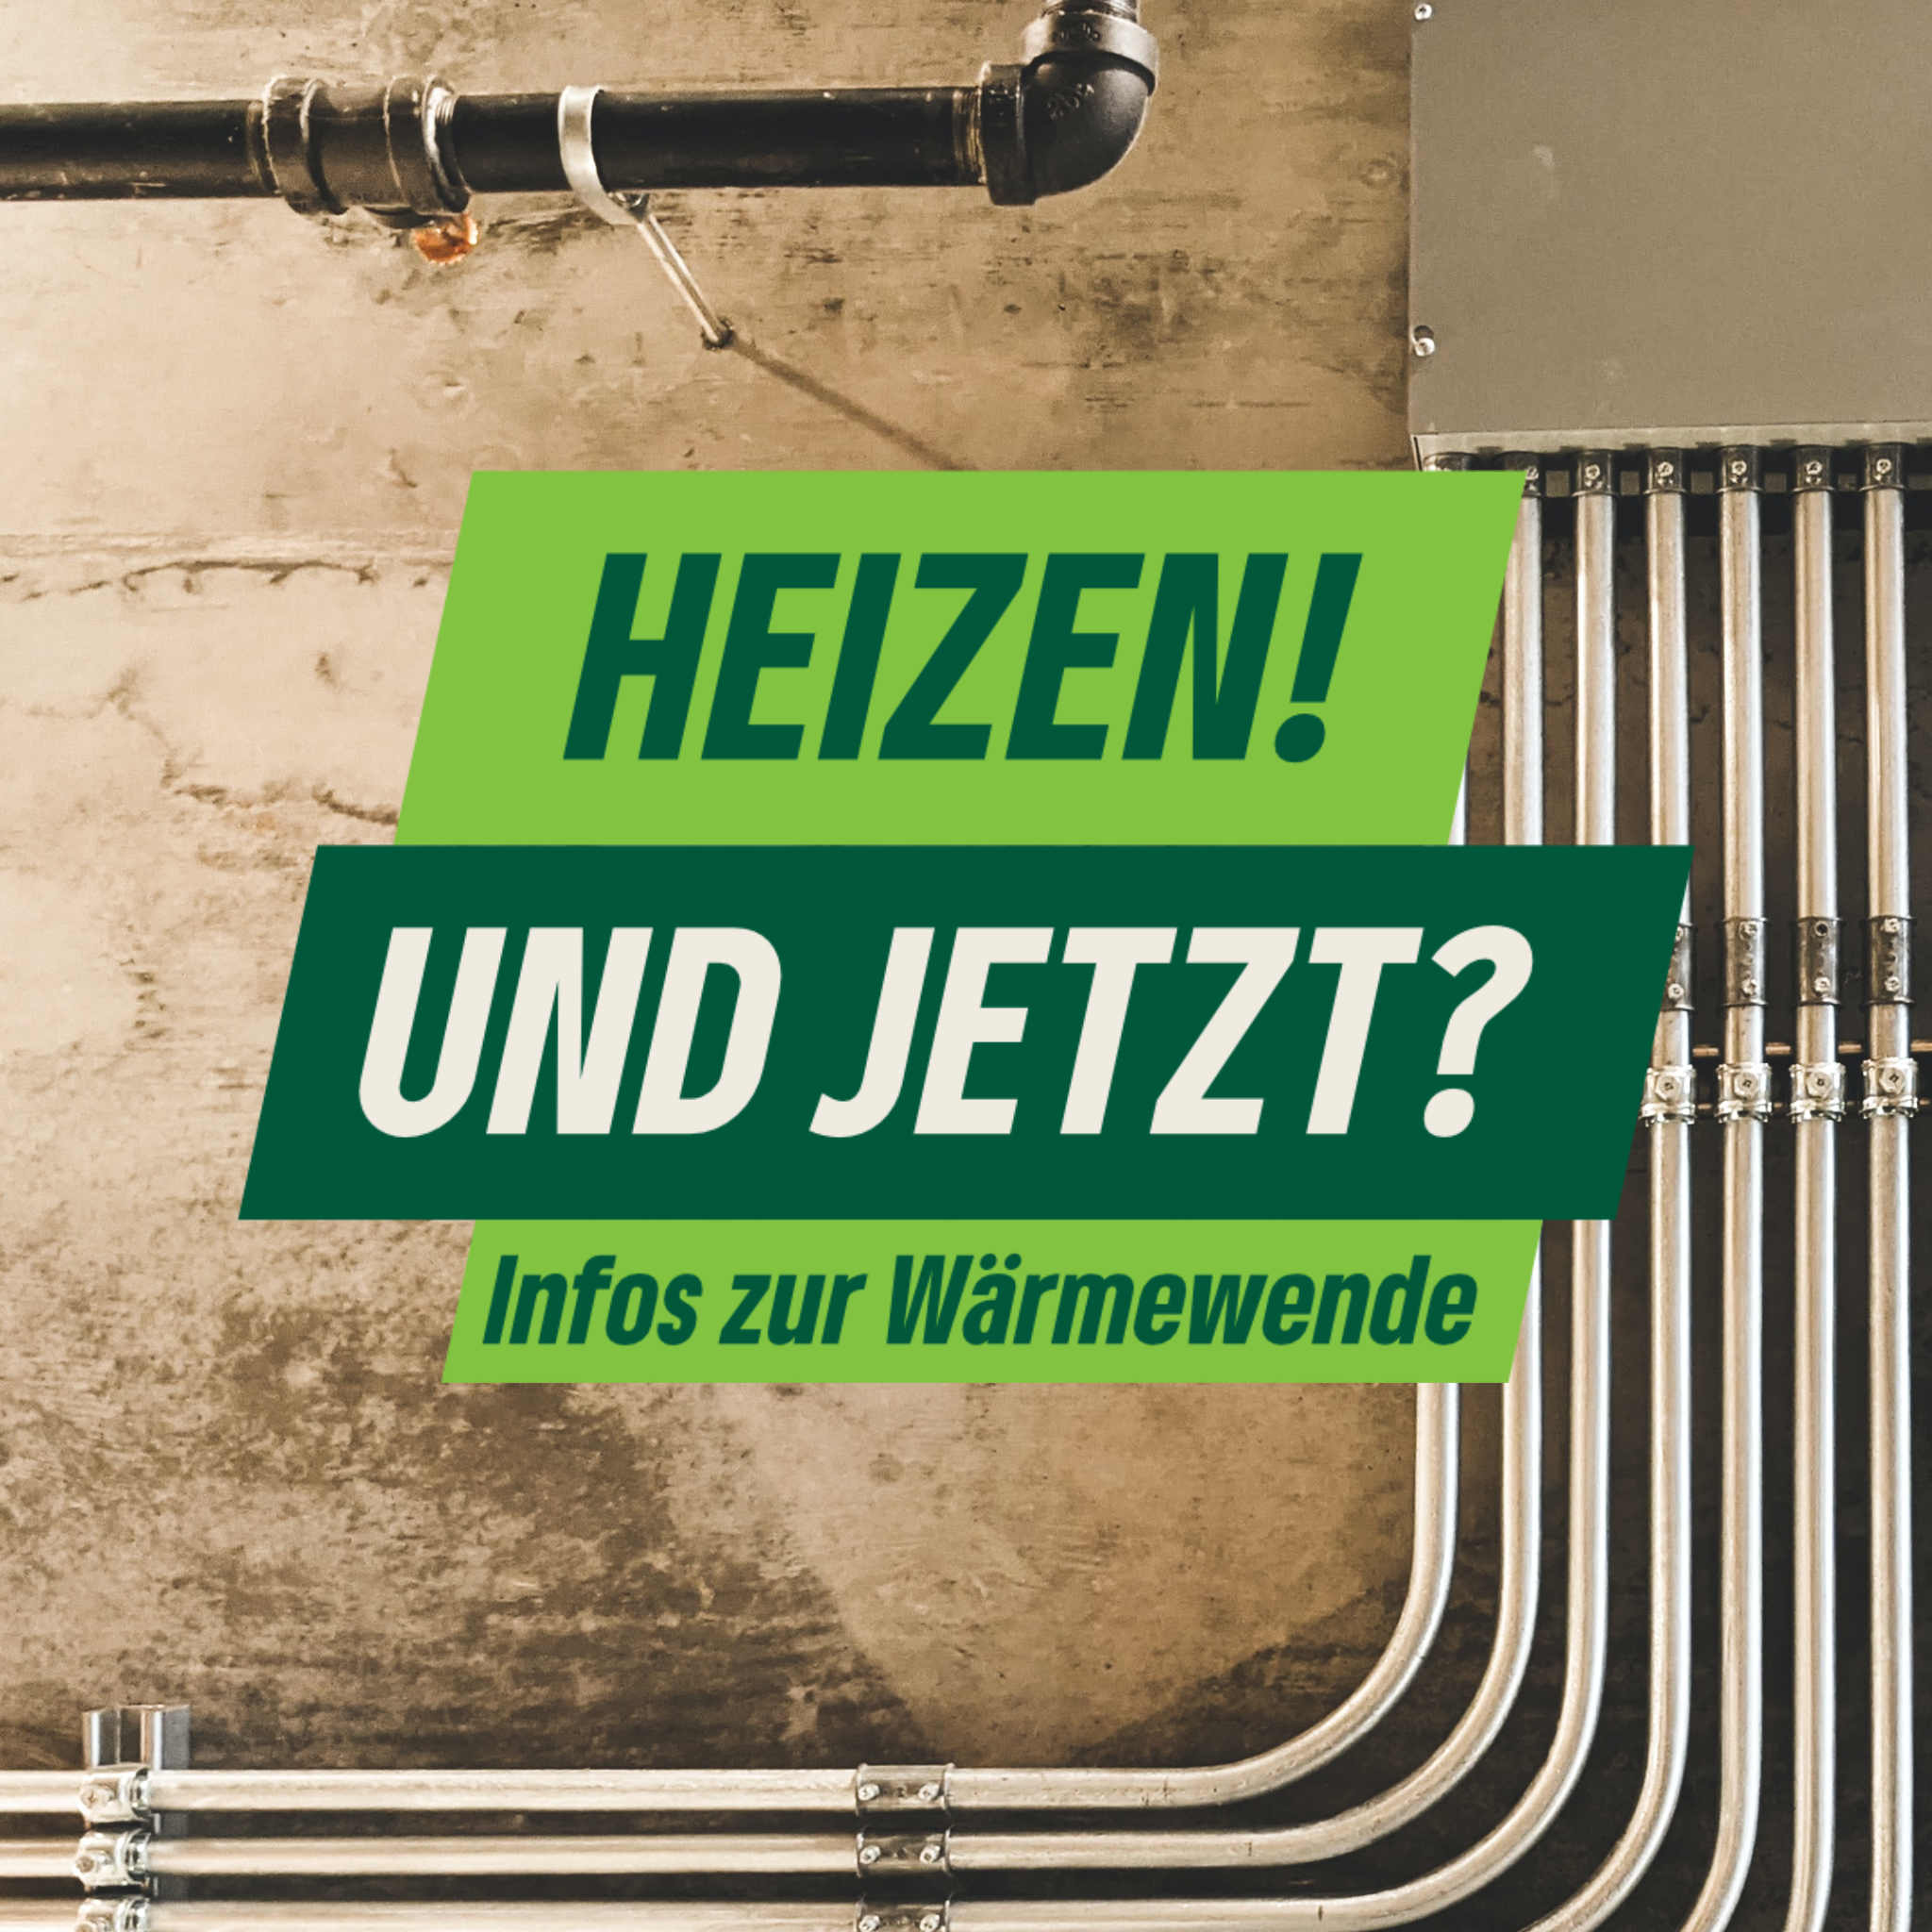 Der Schriftzug "Heizen? und jetzt? - Infos zur Wärmewende" in Bochum in verschiedenen Grüntönen. Im Hintergrund sind Rohrinstallationen abgebildet.